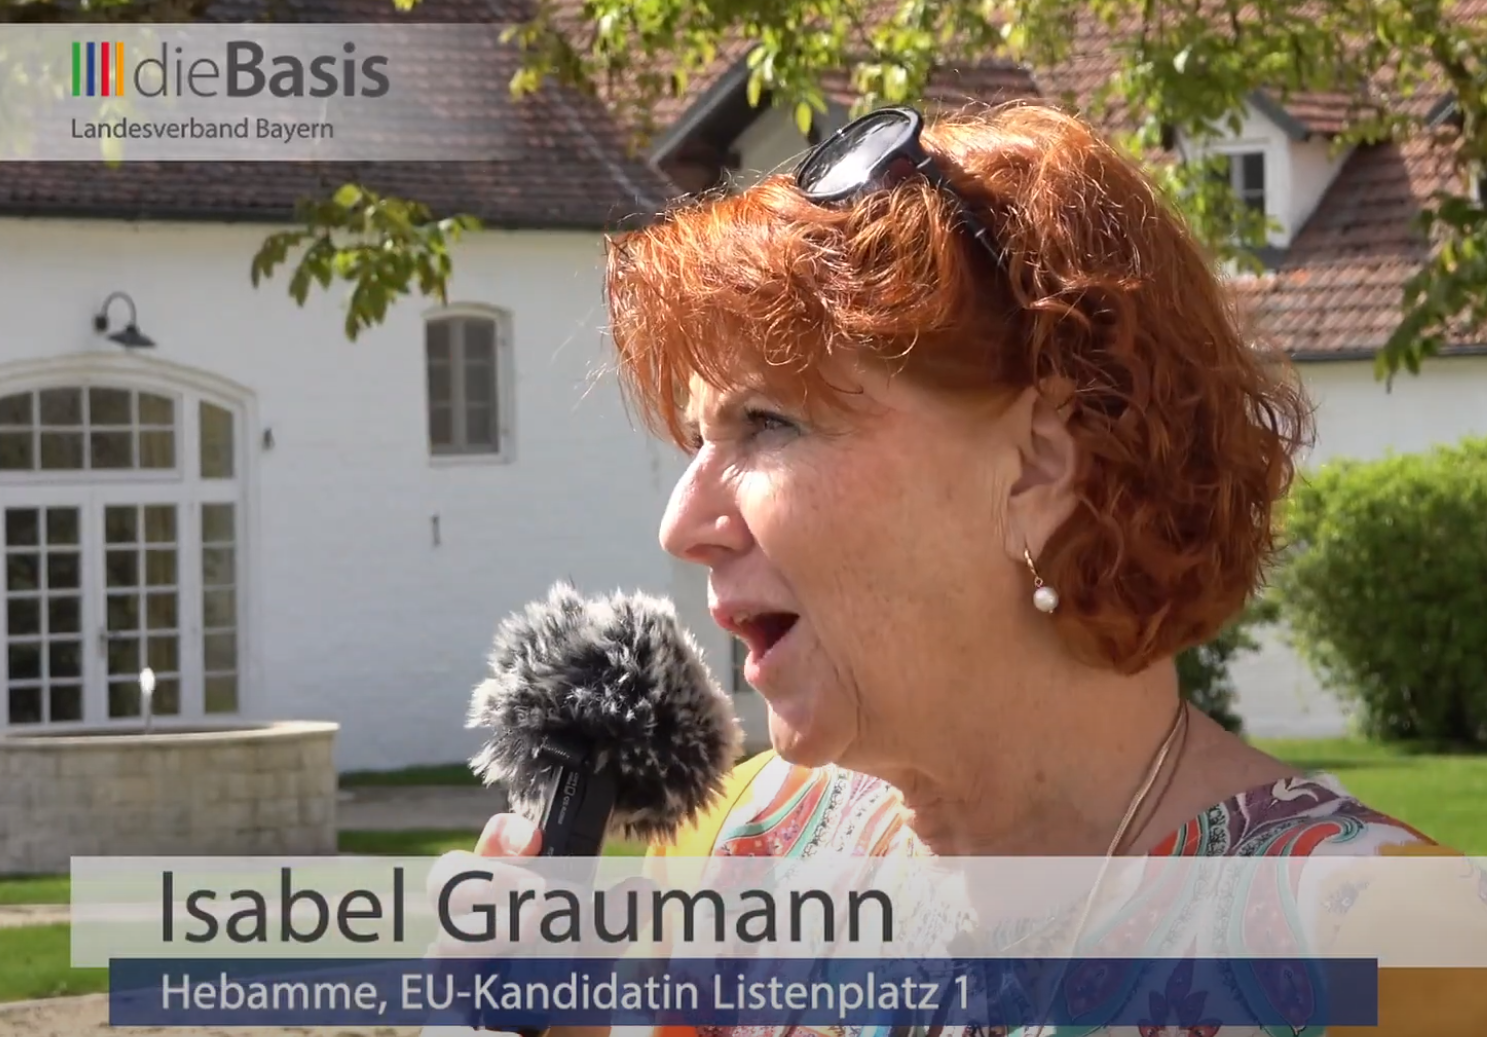 You are currently viewing Spitzenkandidatin Isabel Graumann stellt sich vor